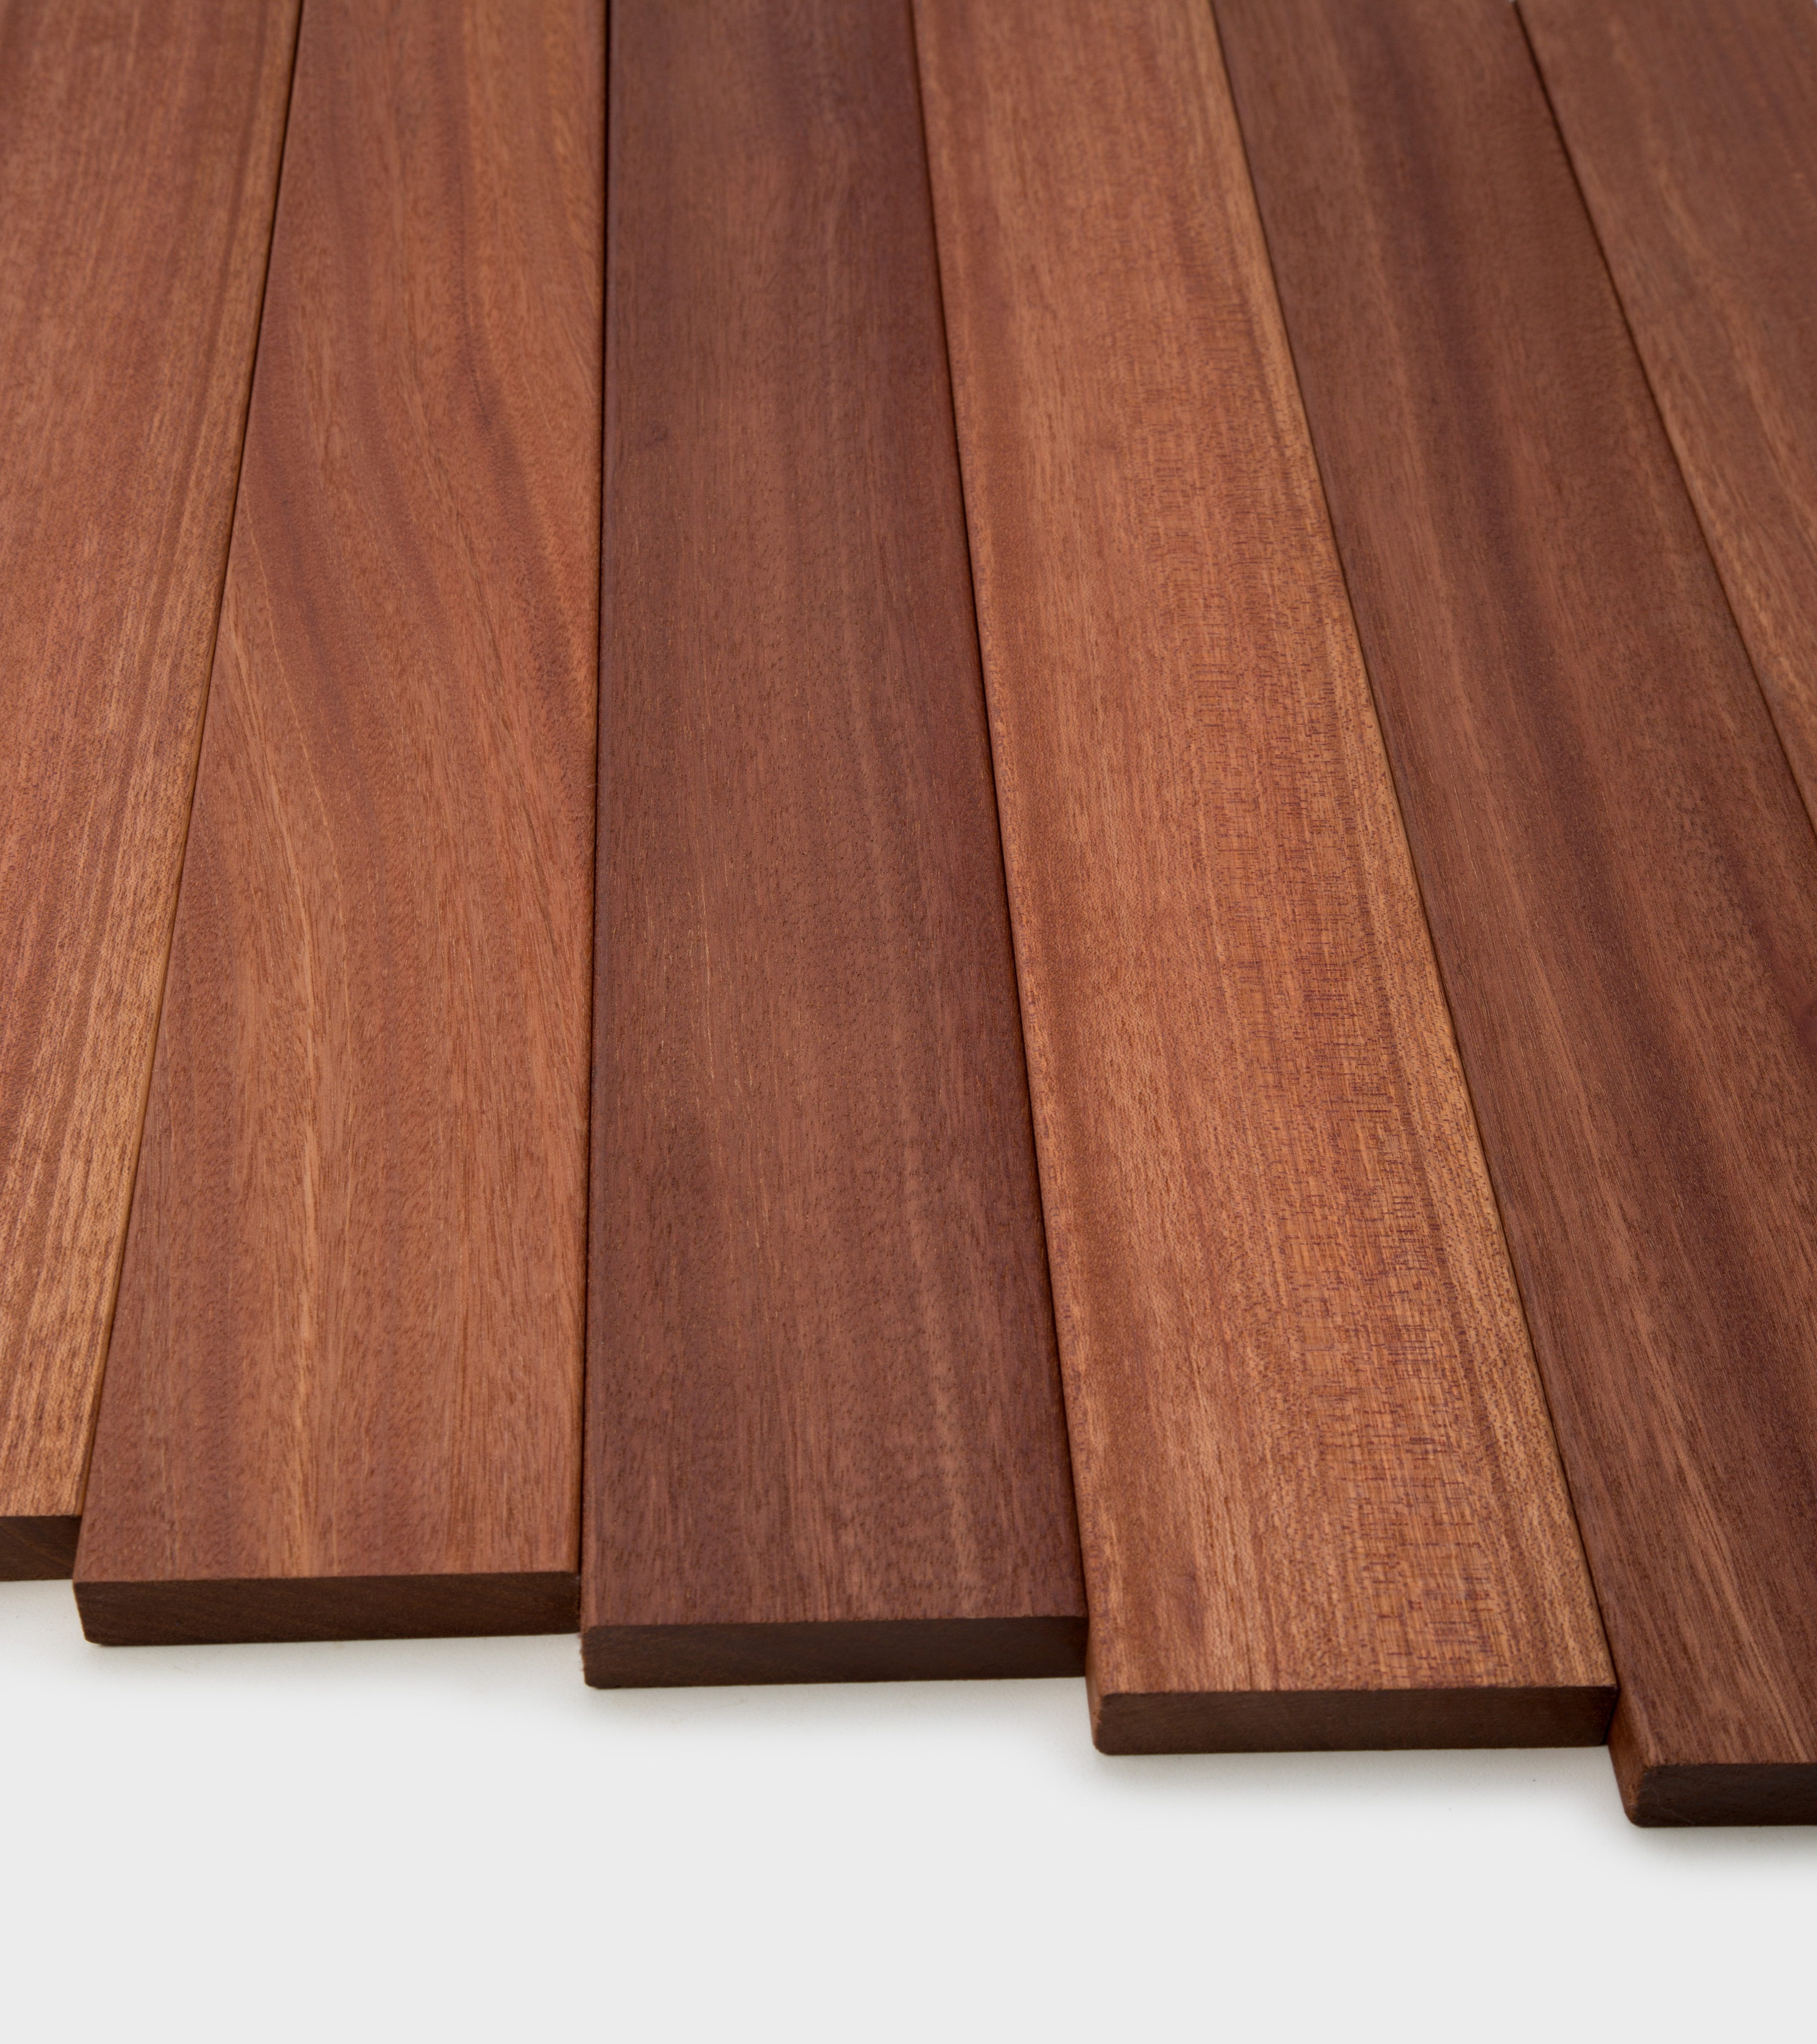 Specialty Lumber Flooring Bluelinx, Bluelinx Laminate Flooring Reviews